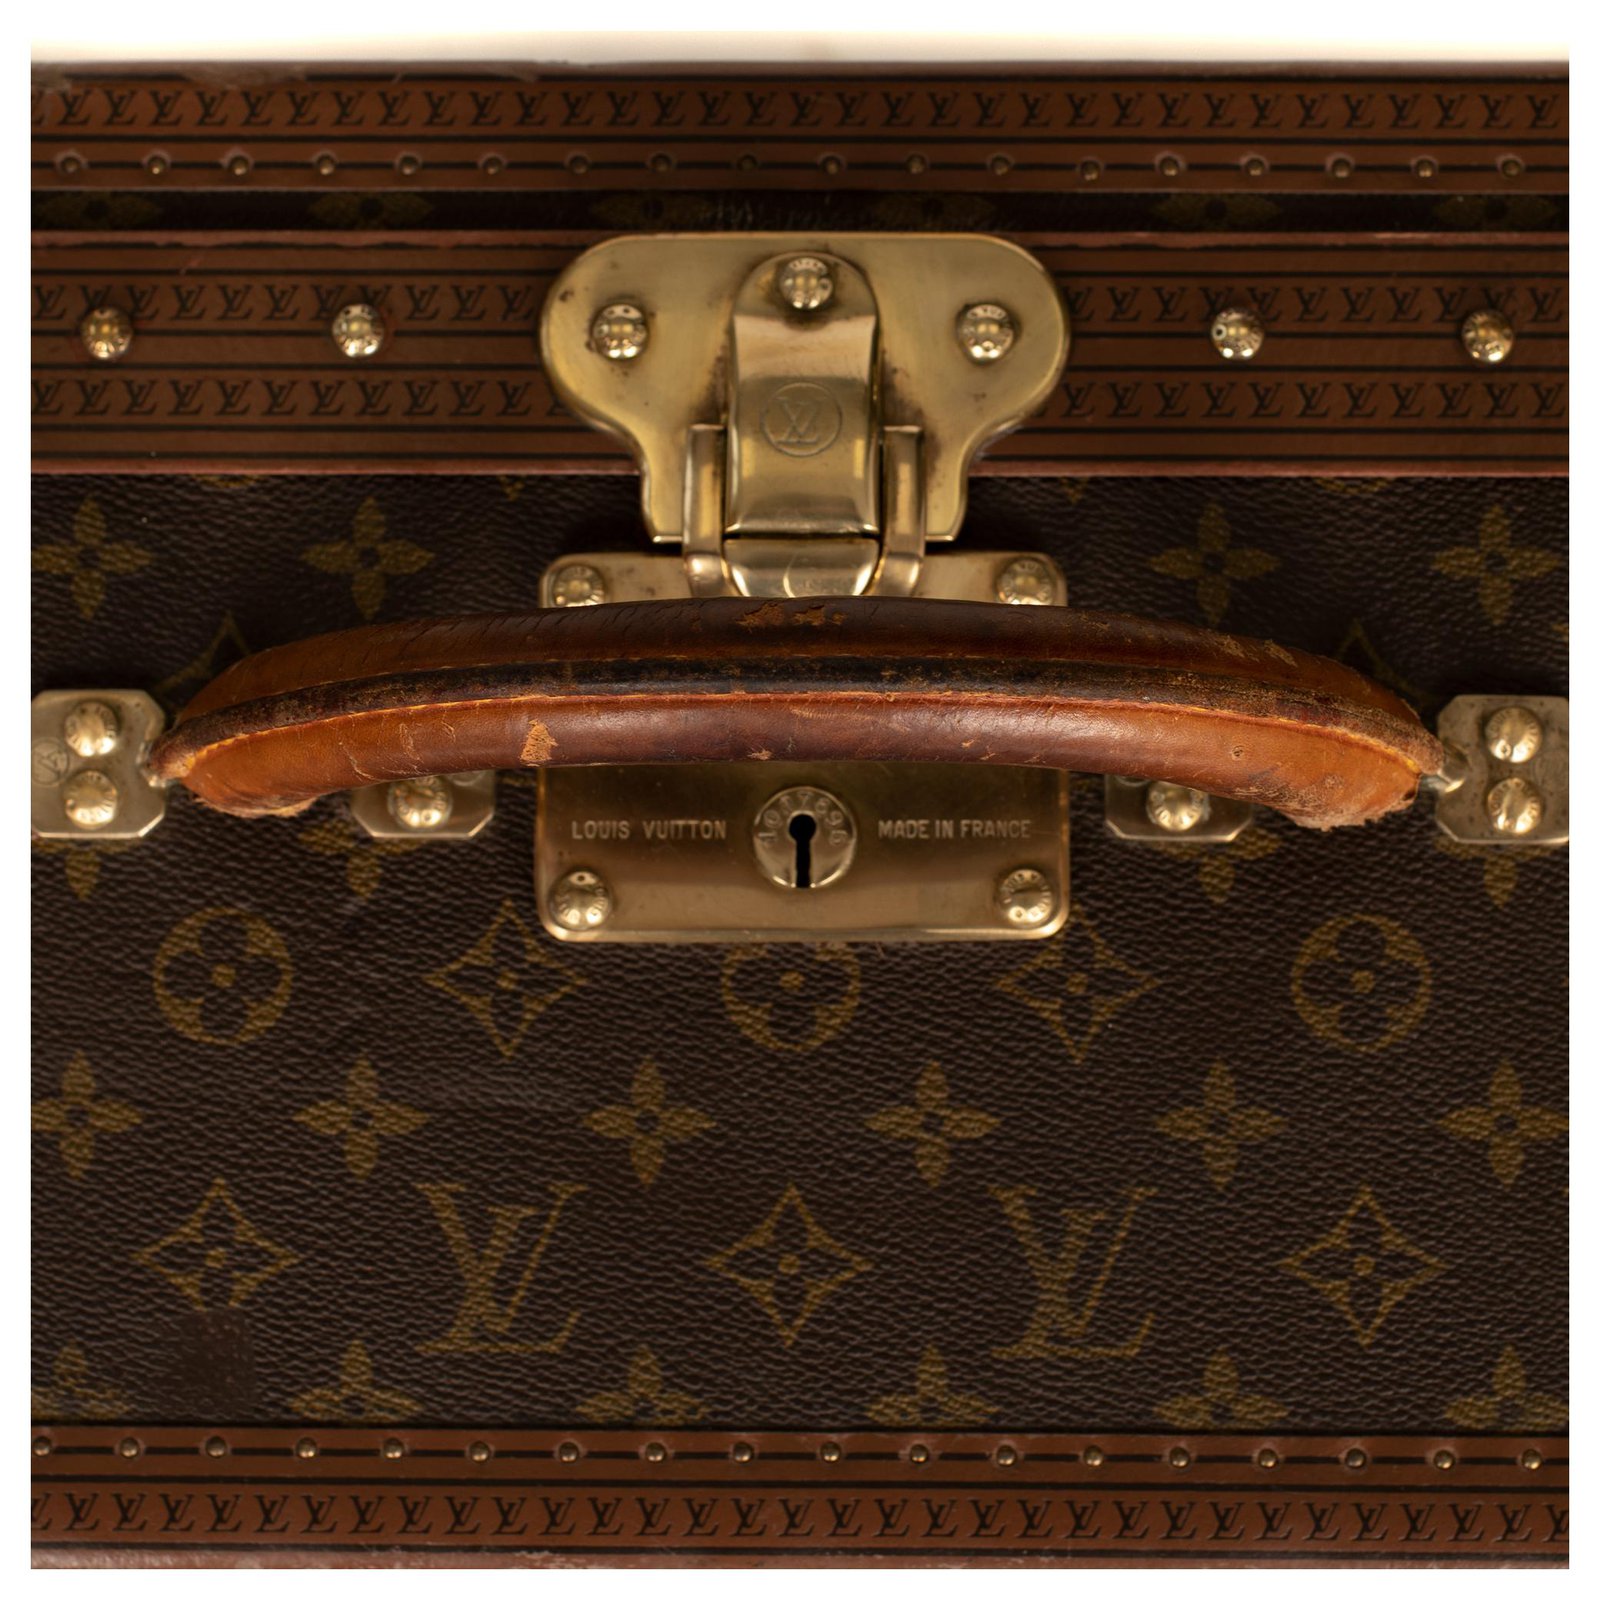 maleta louis vuitton vintage - Buy Vintage accessories on todocoleccion